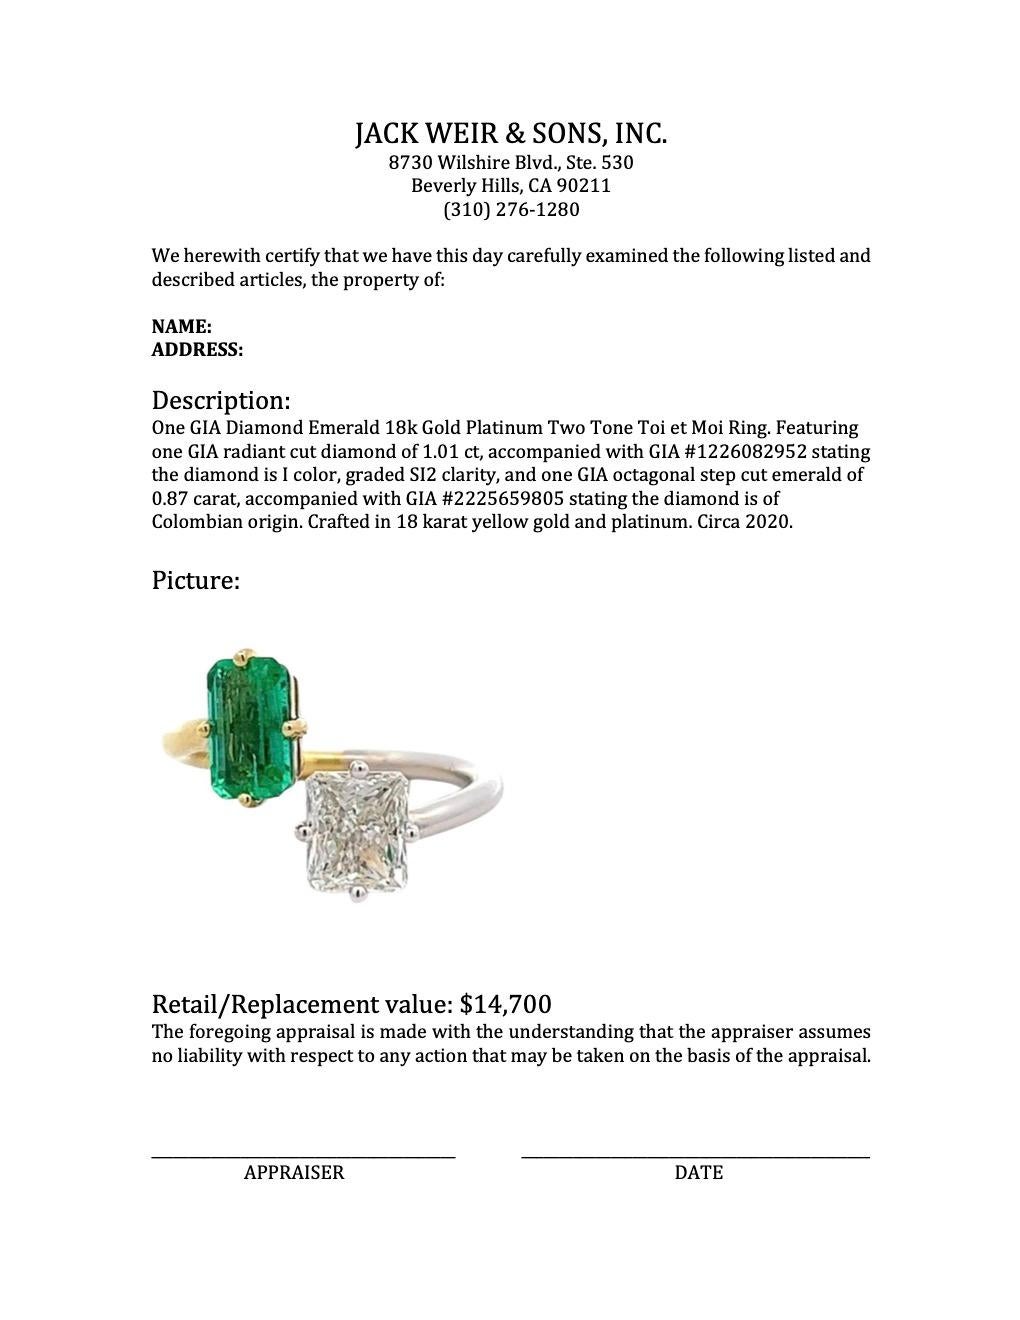 GIA Diamond Emerald 18k Gold Platinum Two Tone Toi et Moi Ring For Sale 2